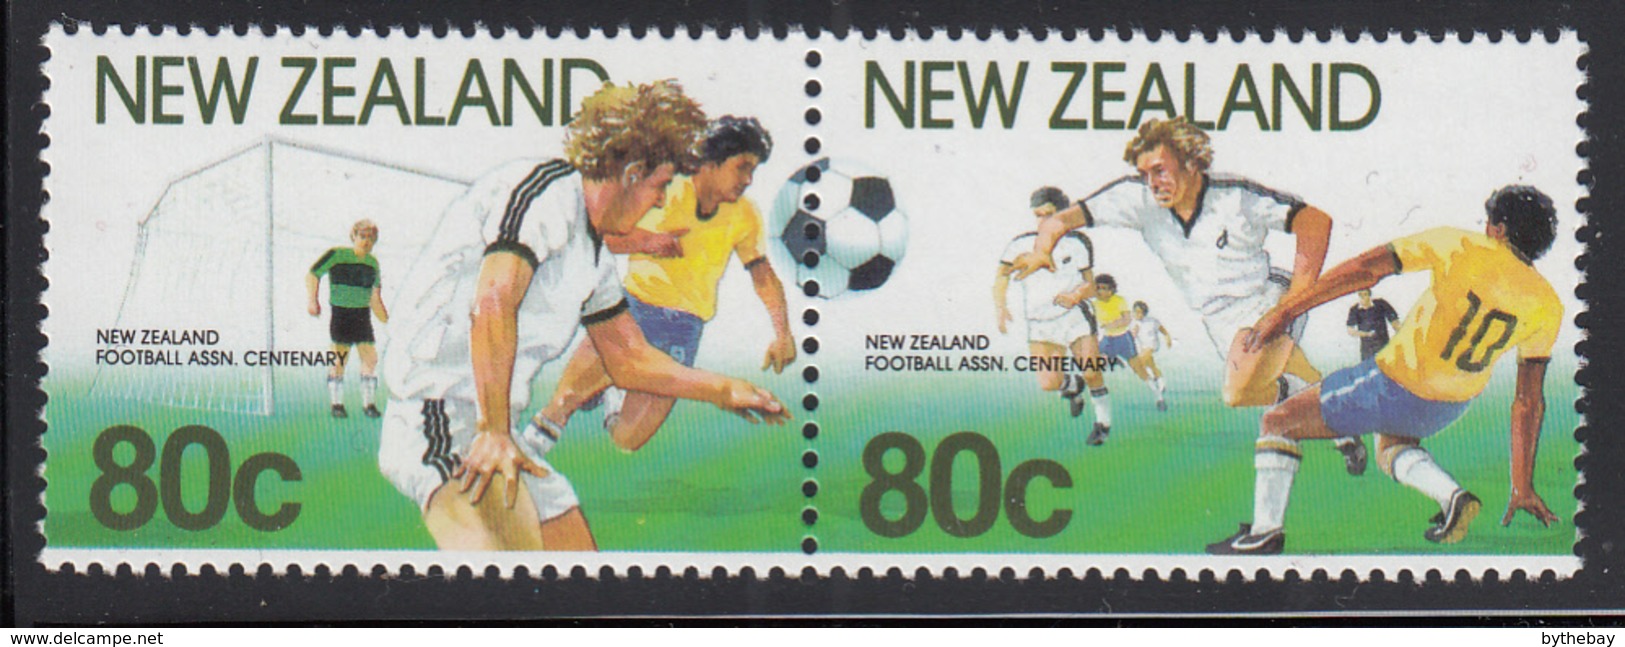 New Zealand 1991 MNH Scott #1022 Pair NZ Football Assn Centenary Soccer Players - Neufs